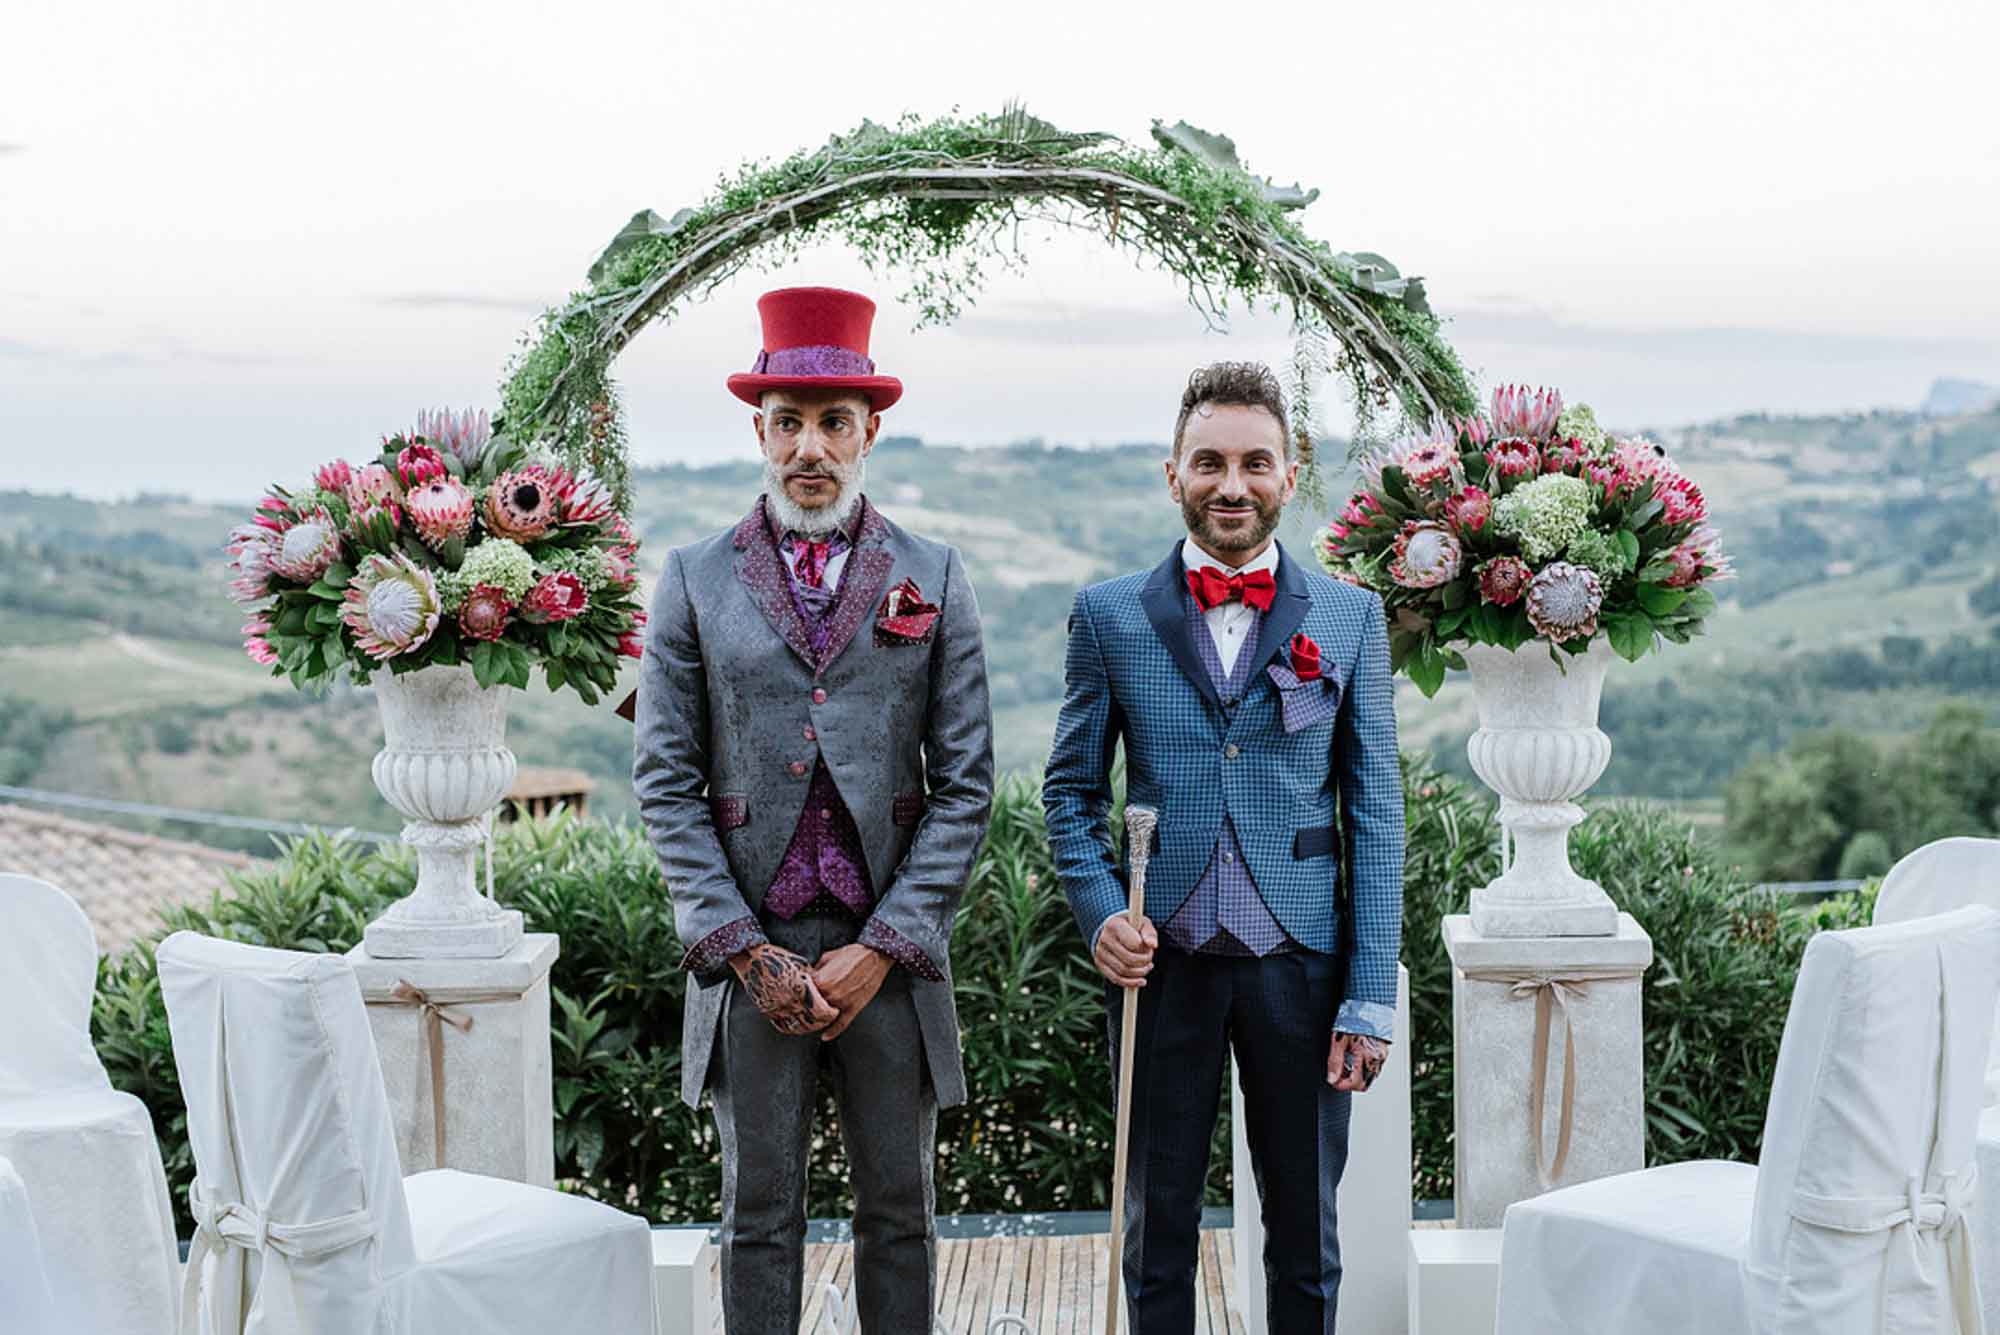 Чисто итальянская дизайнерская гей-свадьба. Фоторепортаж